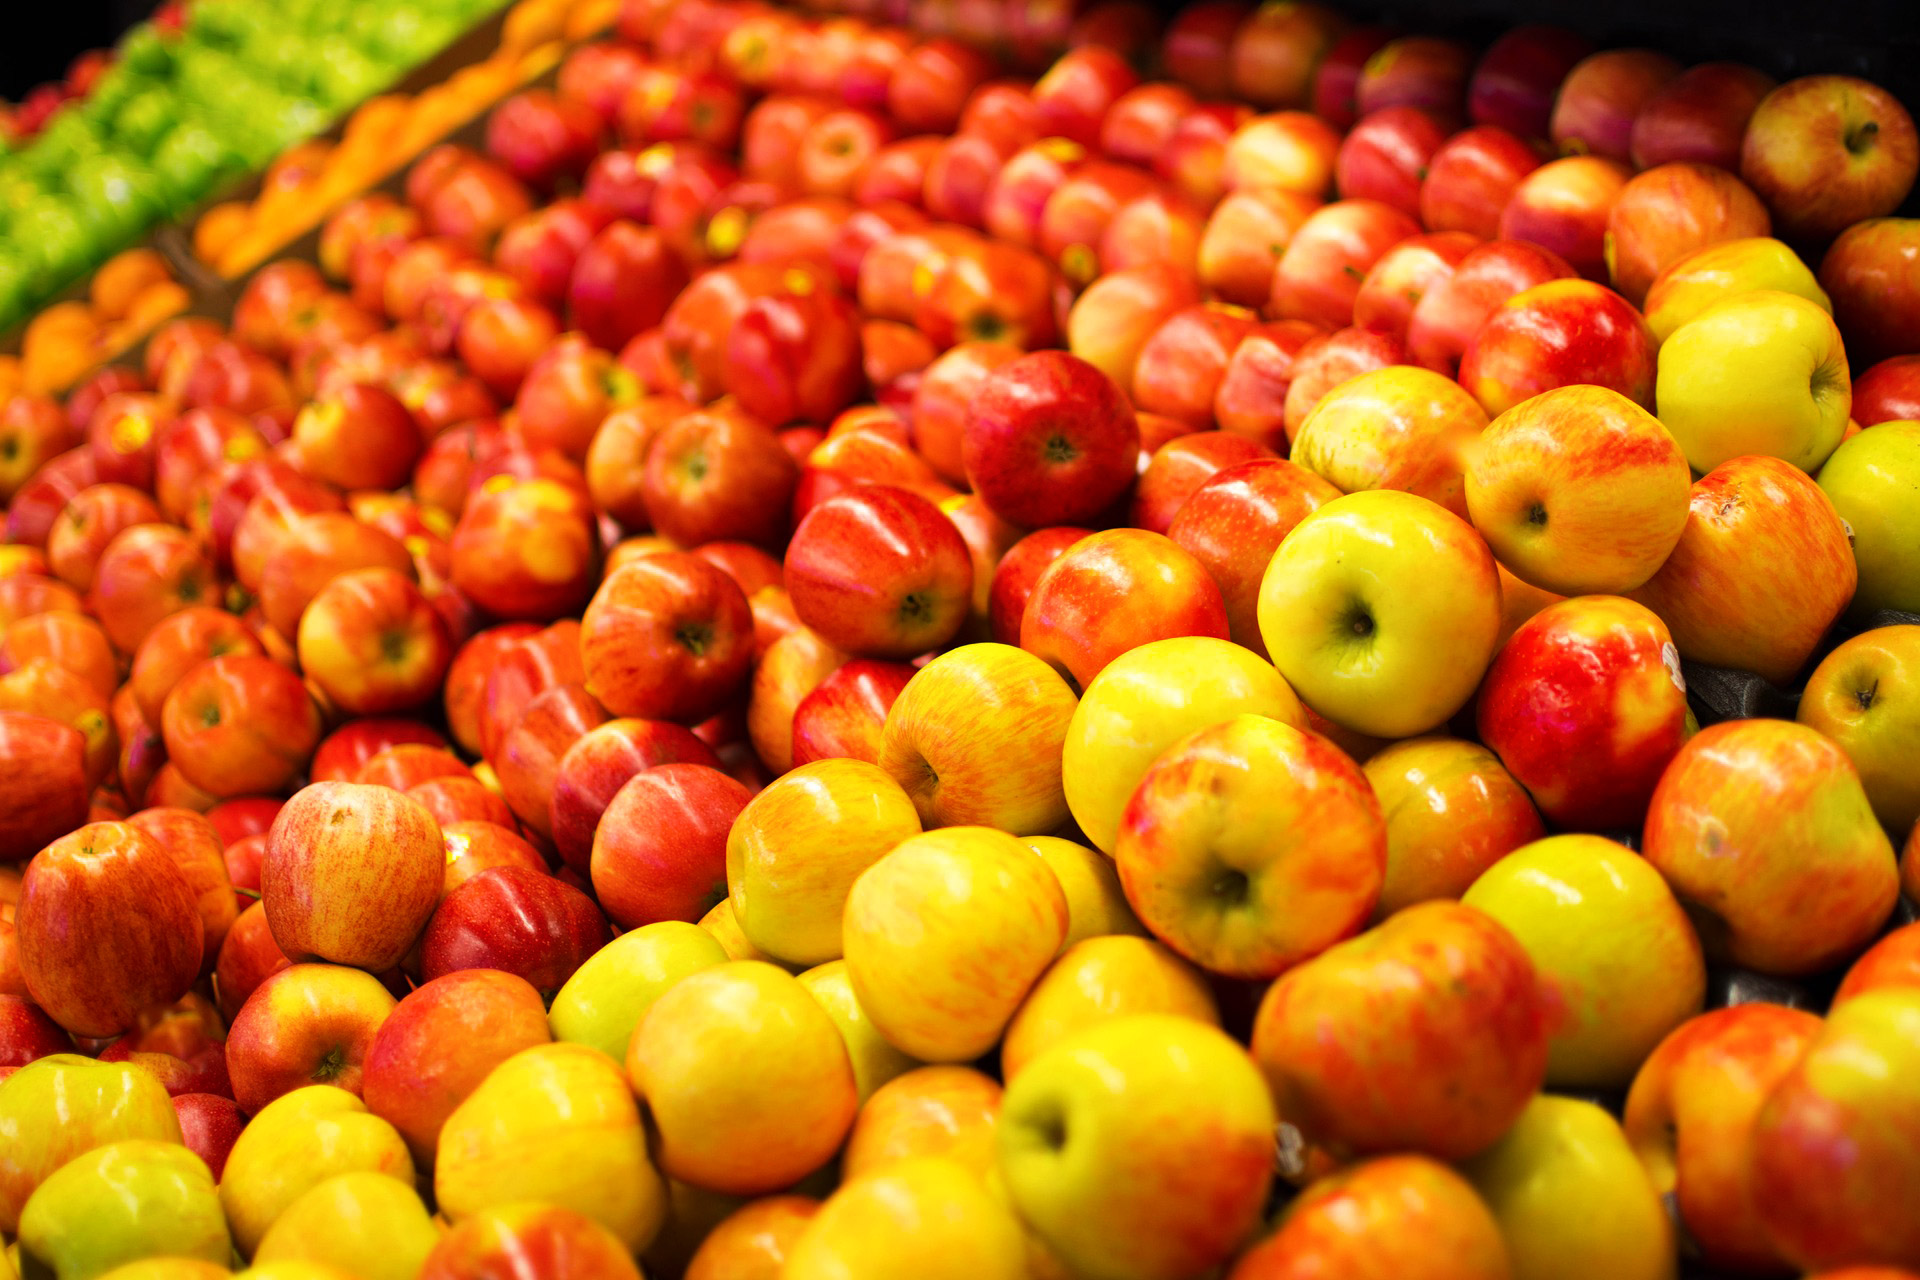 etaLight Anwendung Supermarkt Obst und Gemüse Äpfel